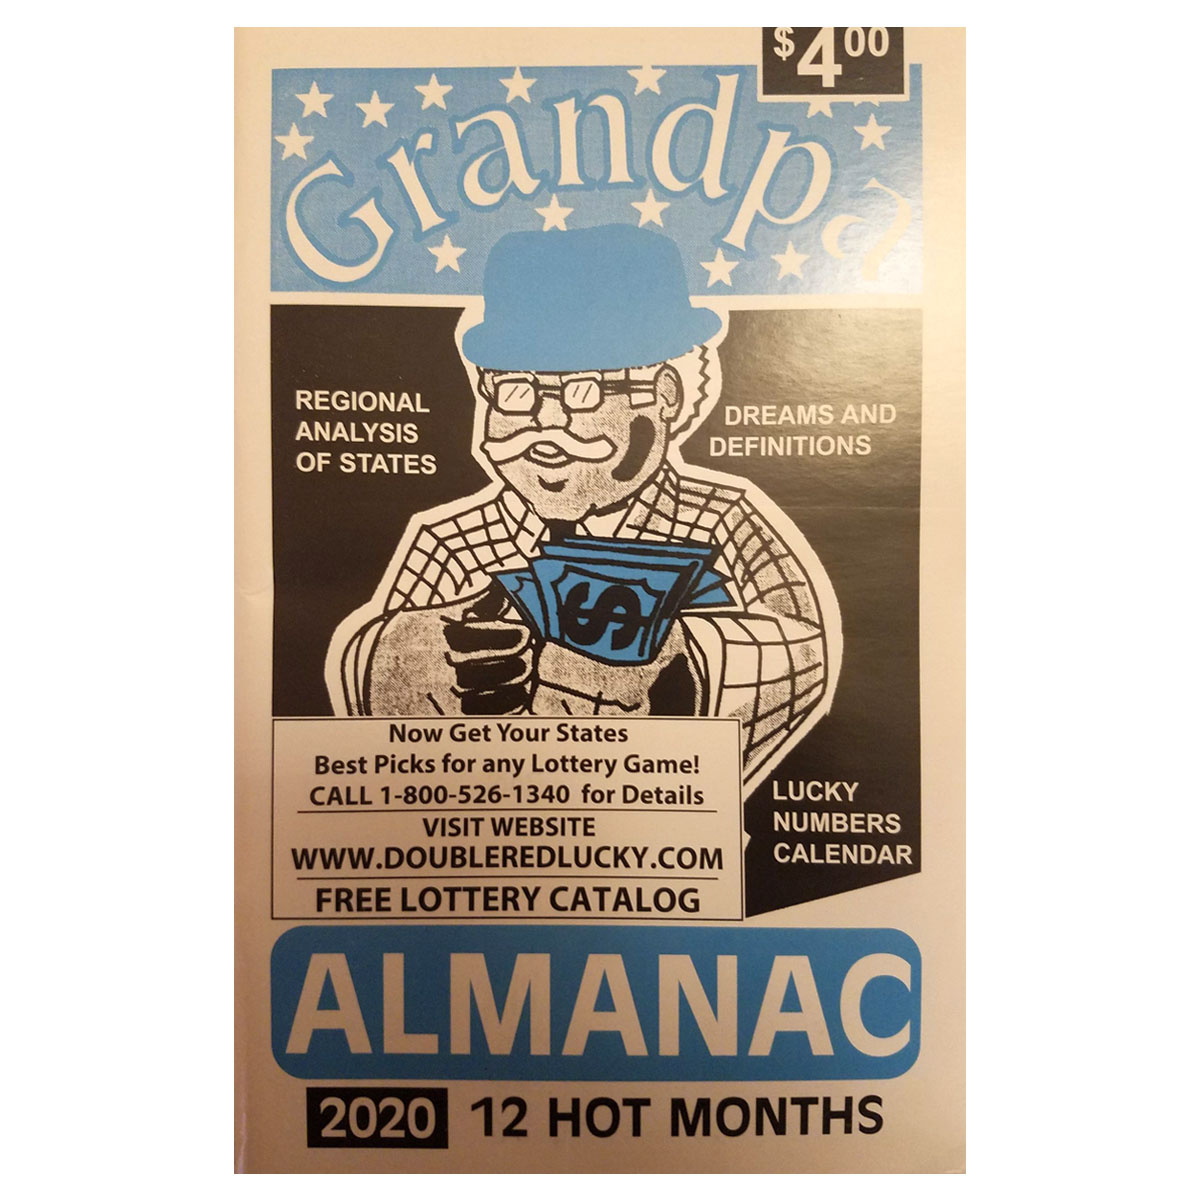 Grandpa Almanac